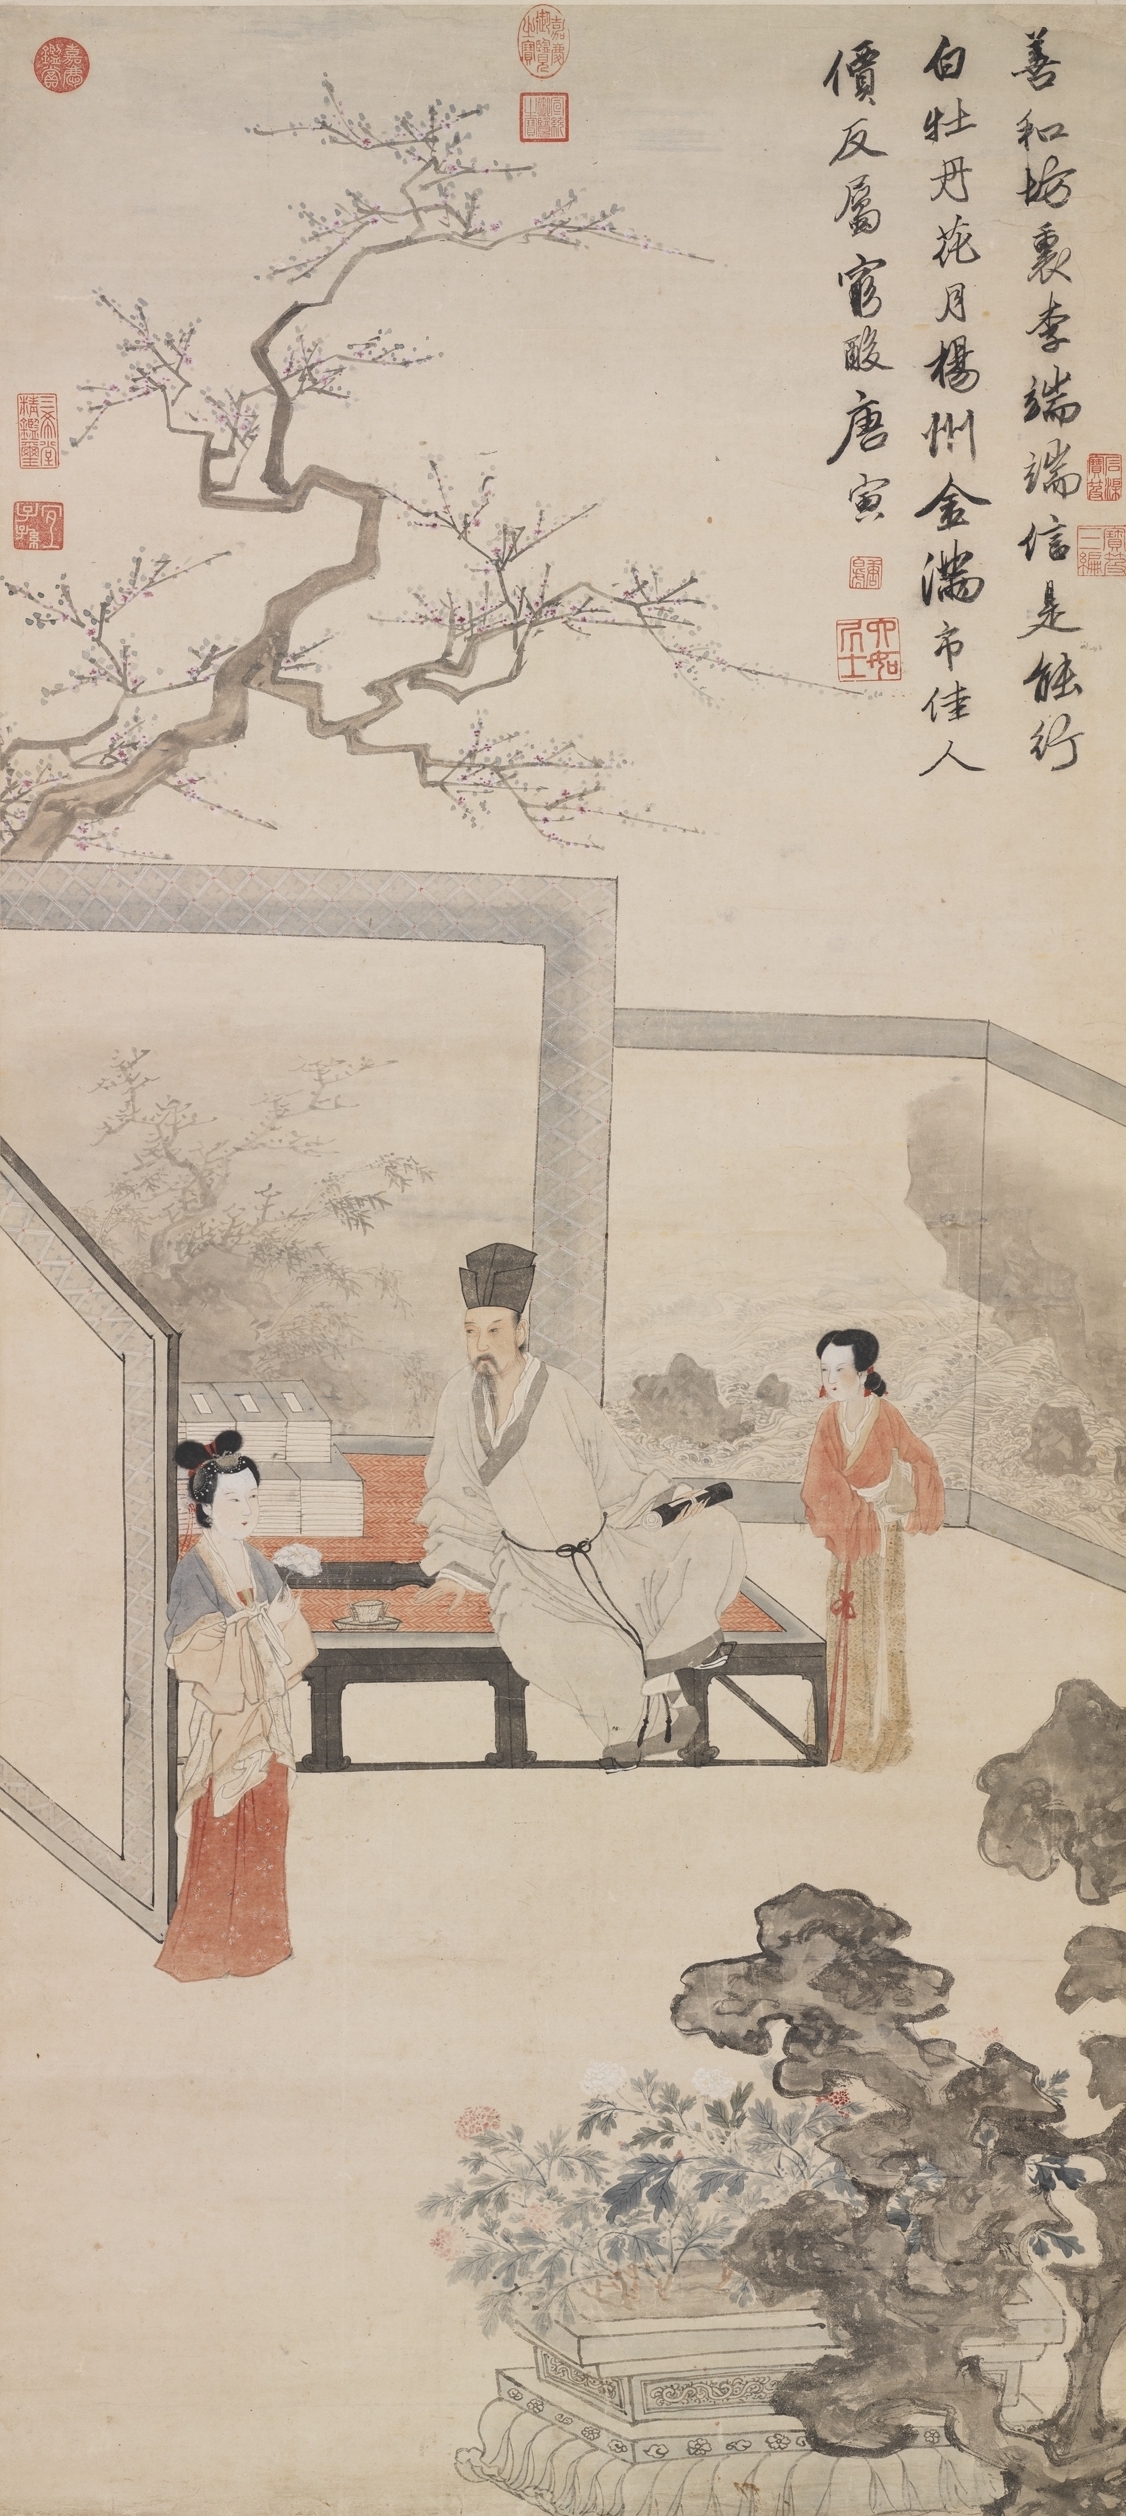 明 唐寅 《仿唐人仕女》轴 台北故宫博物院藏本幅题材,取自唐代名妓